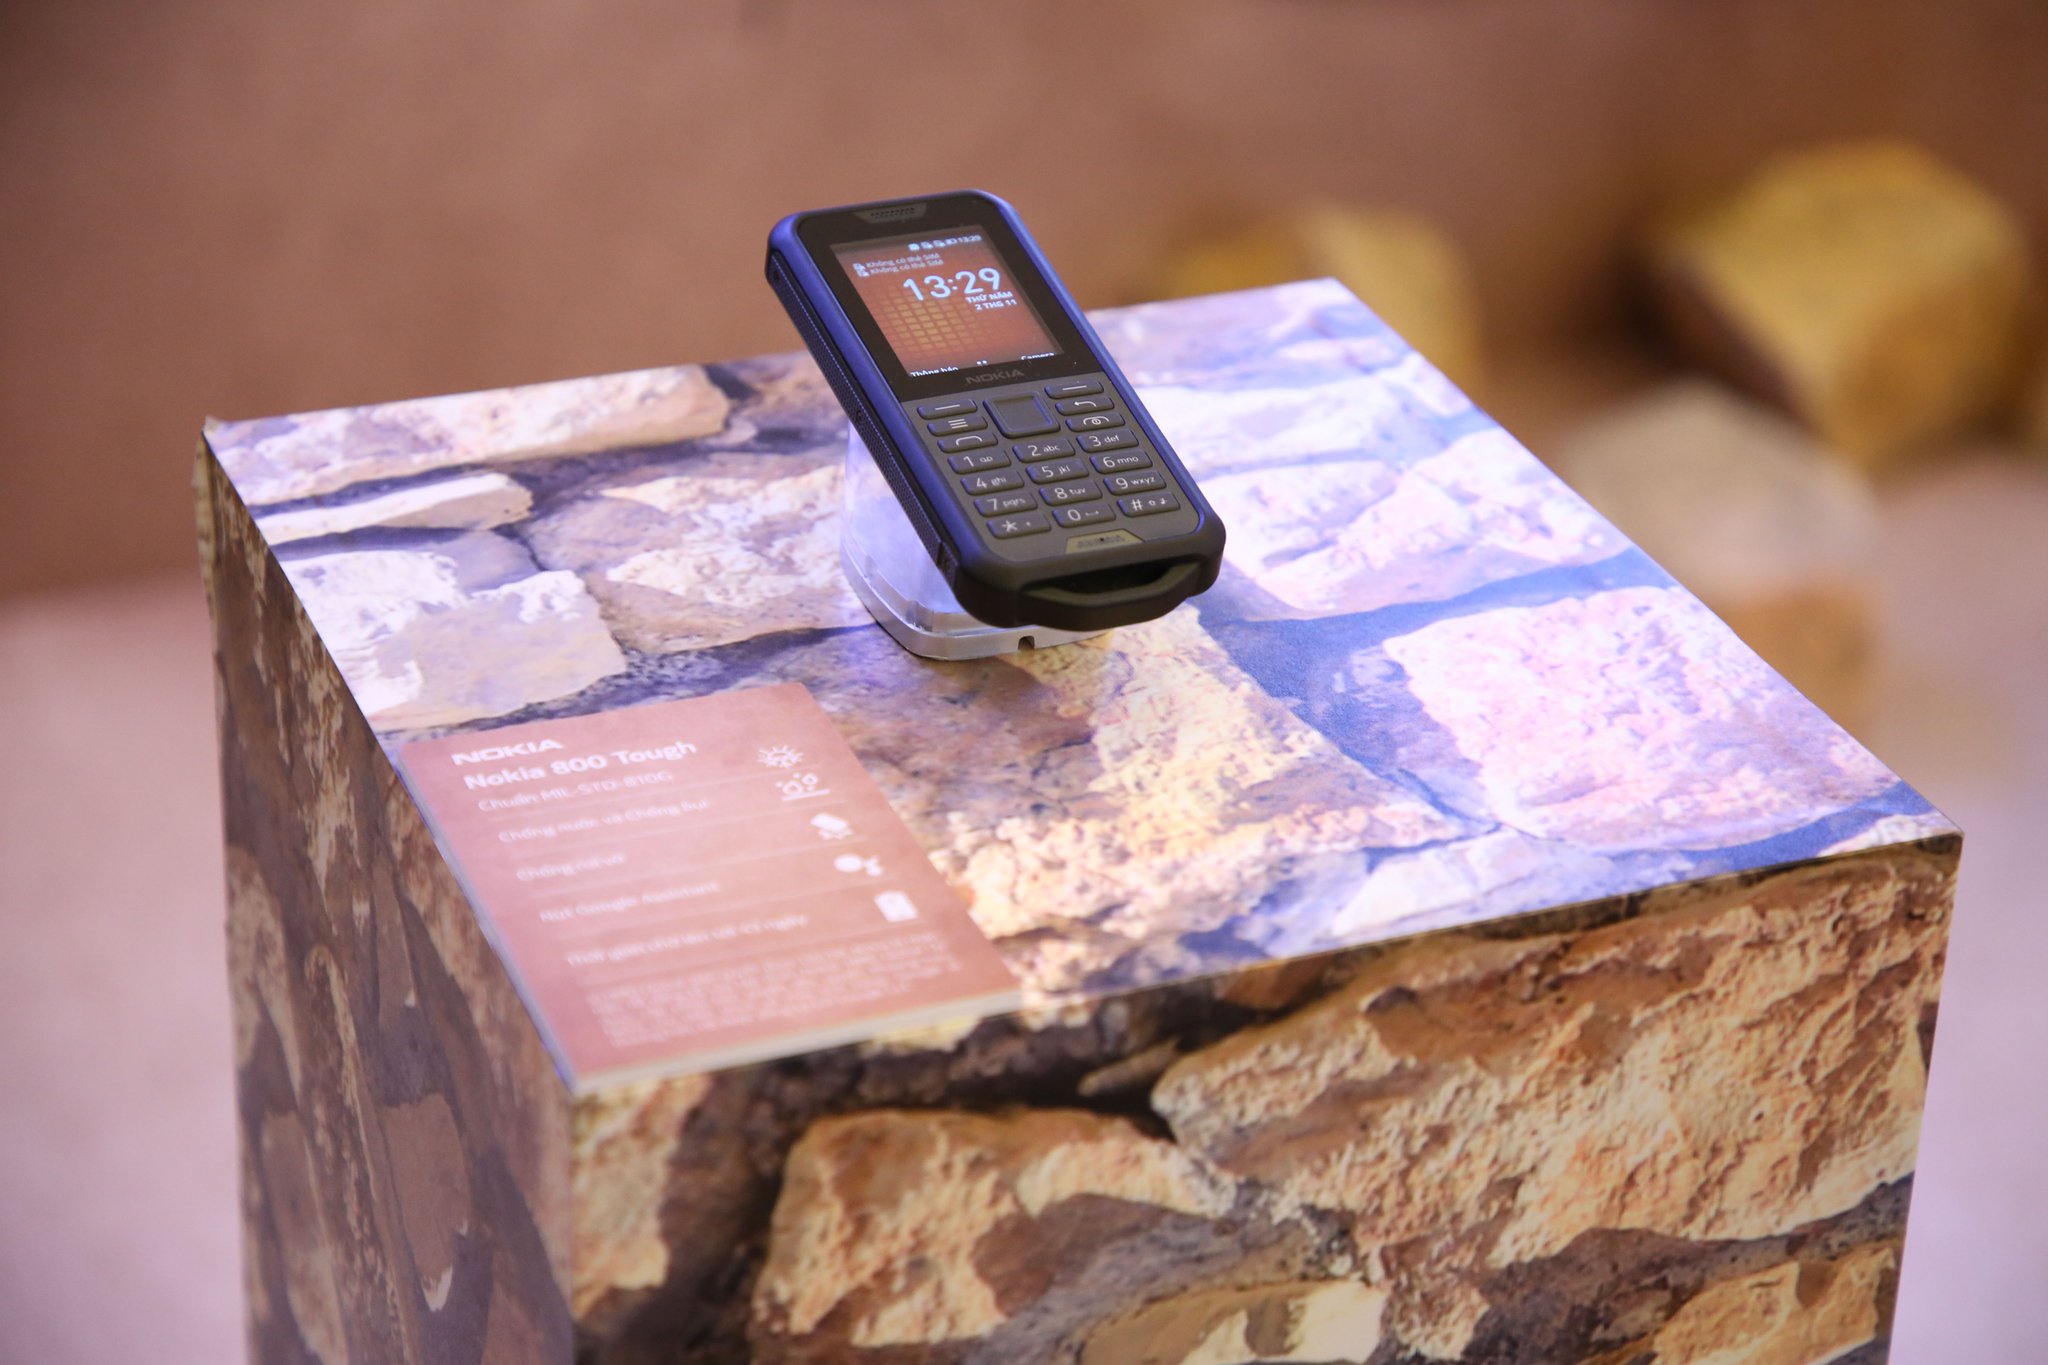 "Cục gạch" Nokia 800 Tough đã chính thức bán ở VN, giá 2,490,000đ